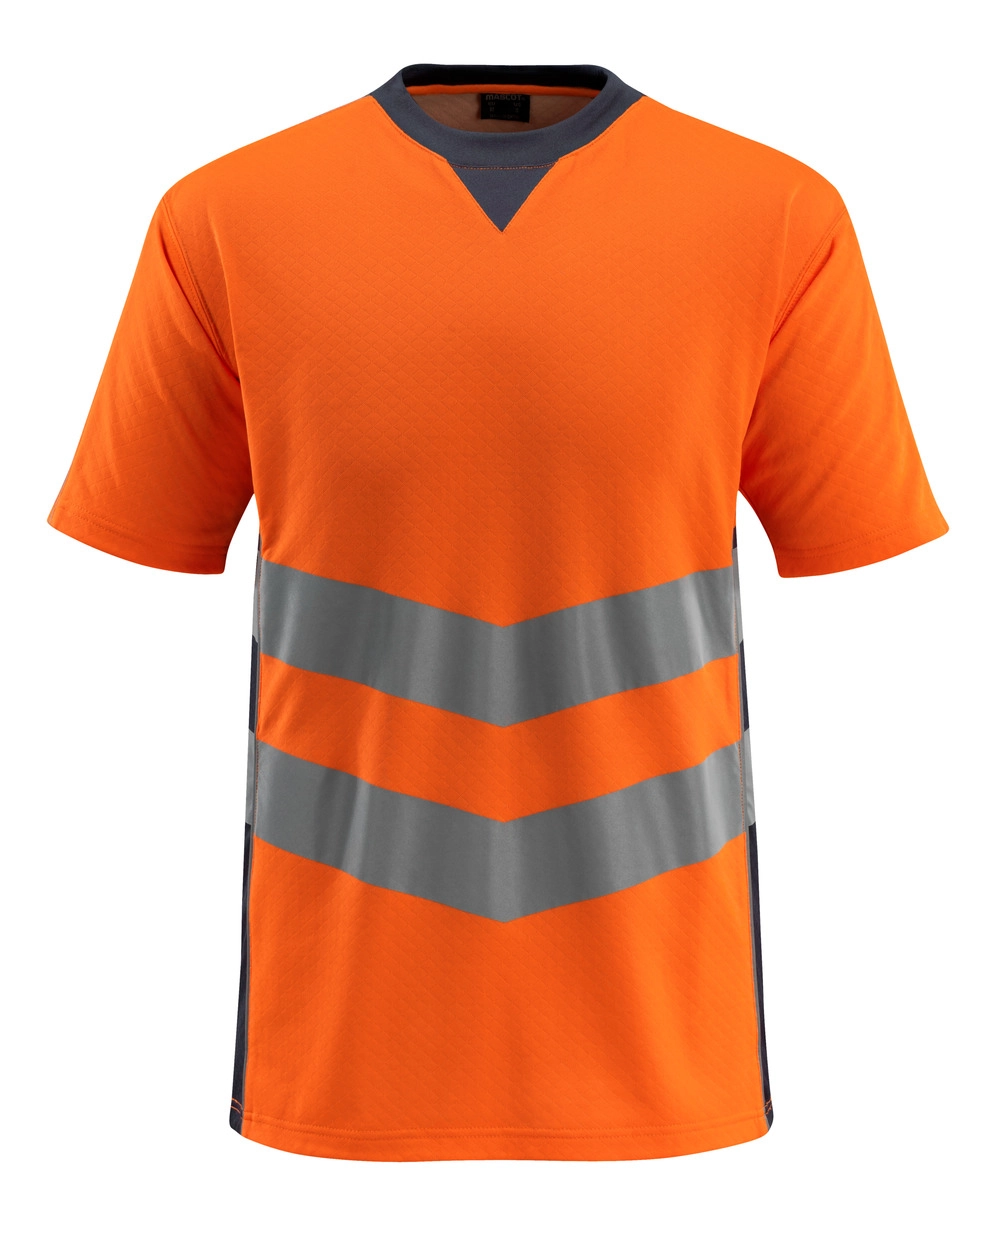 MASCOT® Sandwell T-shirt Größe 3XL, hi-vis orange/schwarzblau